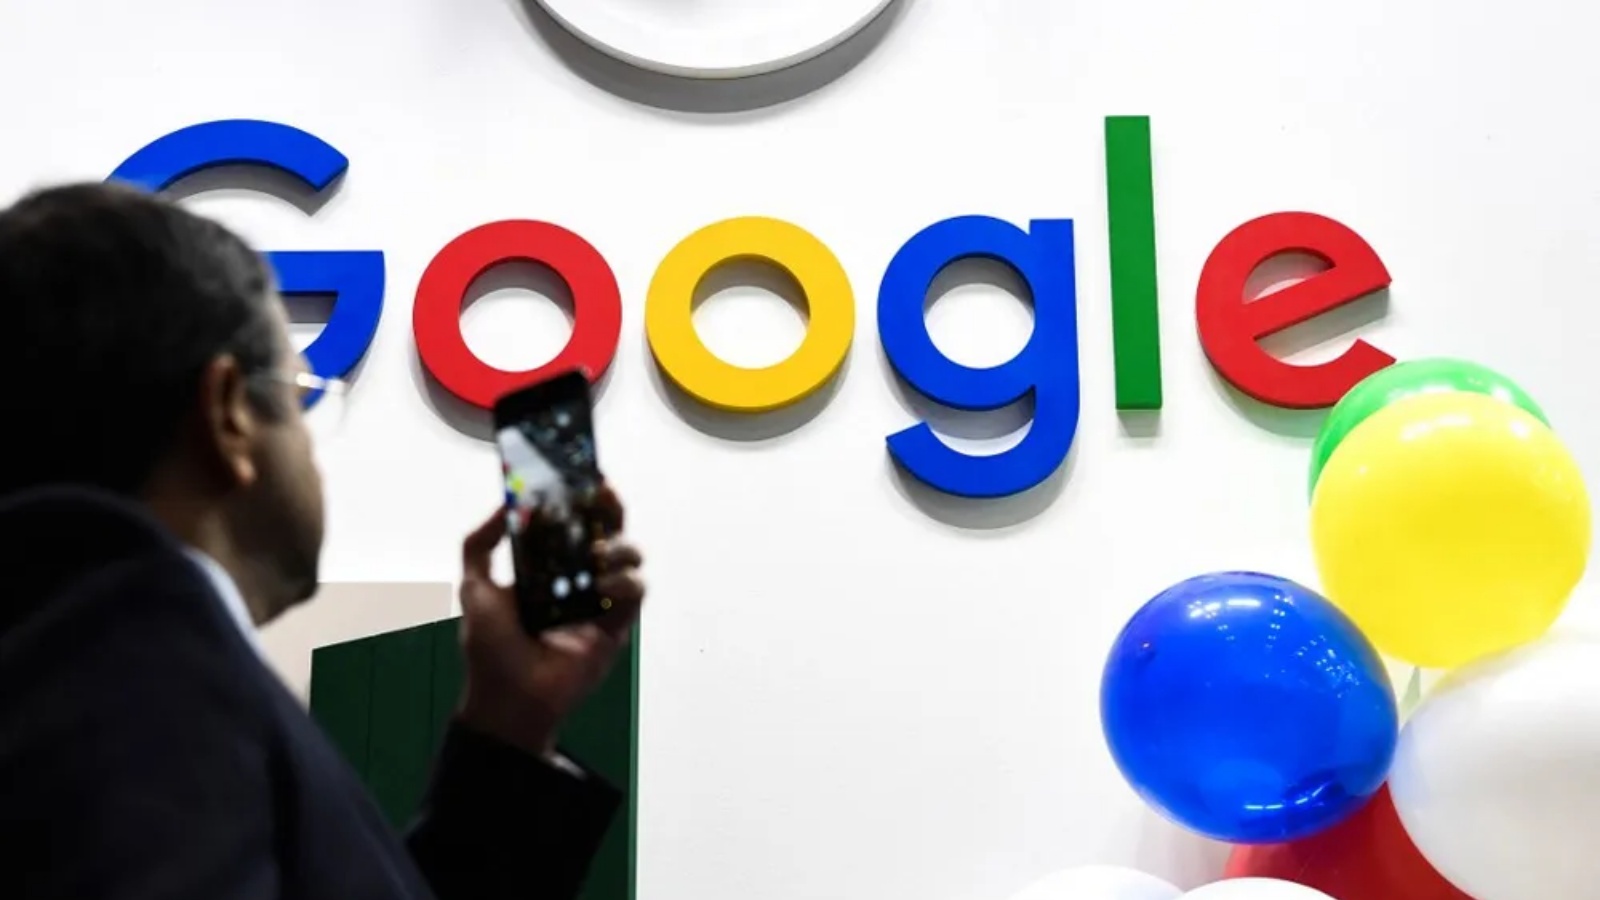 غوغل تعمل مع مؤسسات إعلامية على تصميم أداة جديدة مدعومة بالذكاء الاصطناعي